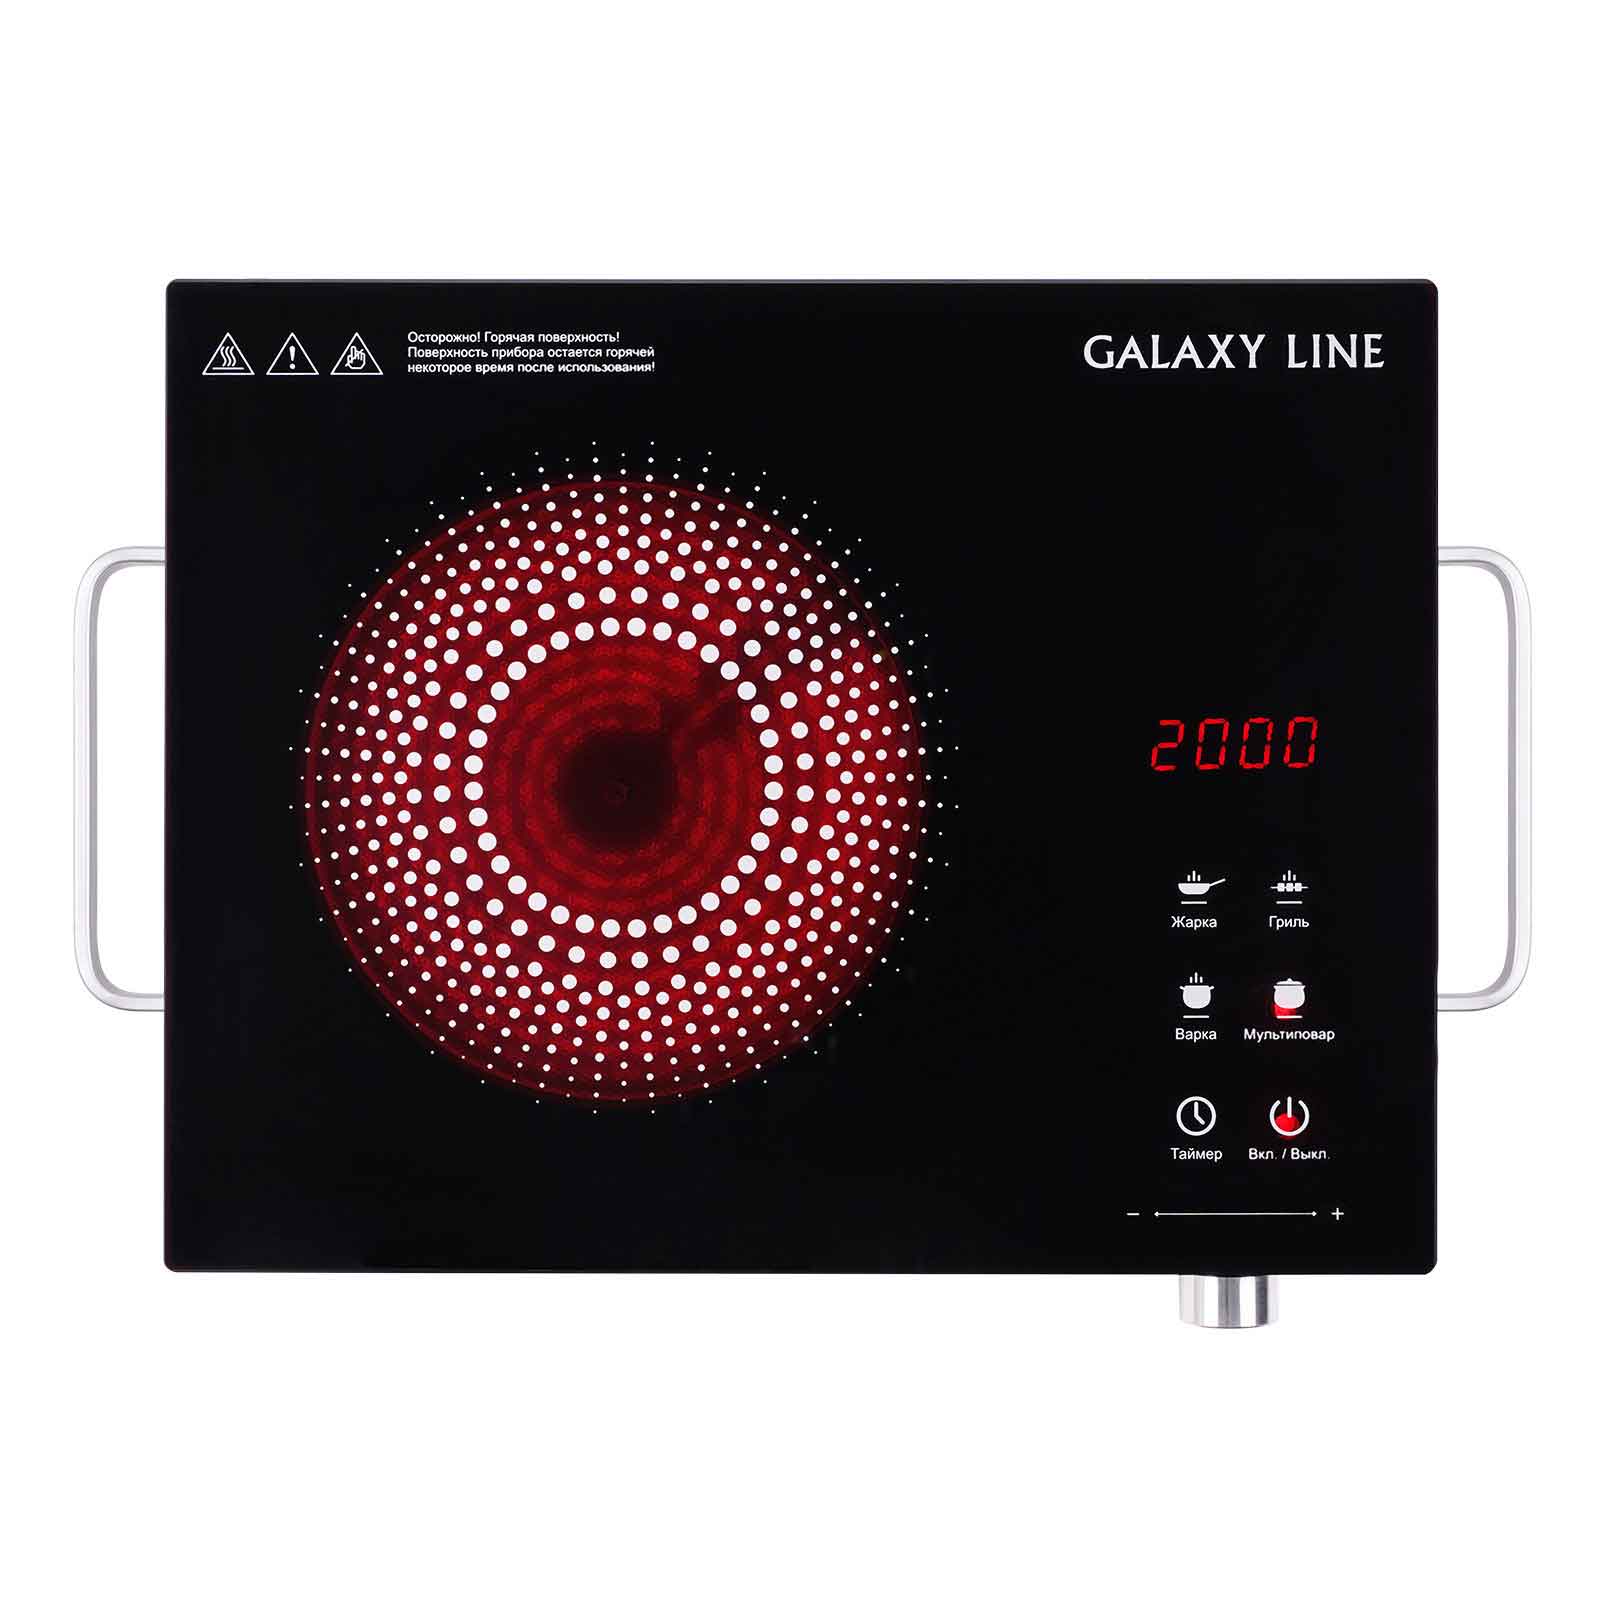 Инфракрасная плитка Galaxy Line GL 3031 мощность 2000 Вт, 4 режима